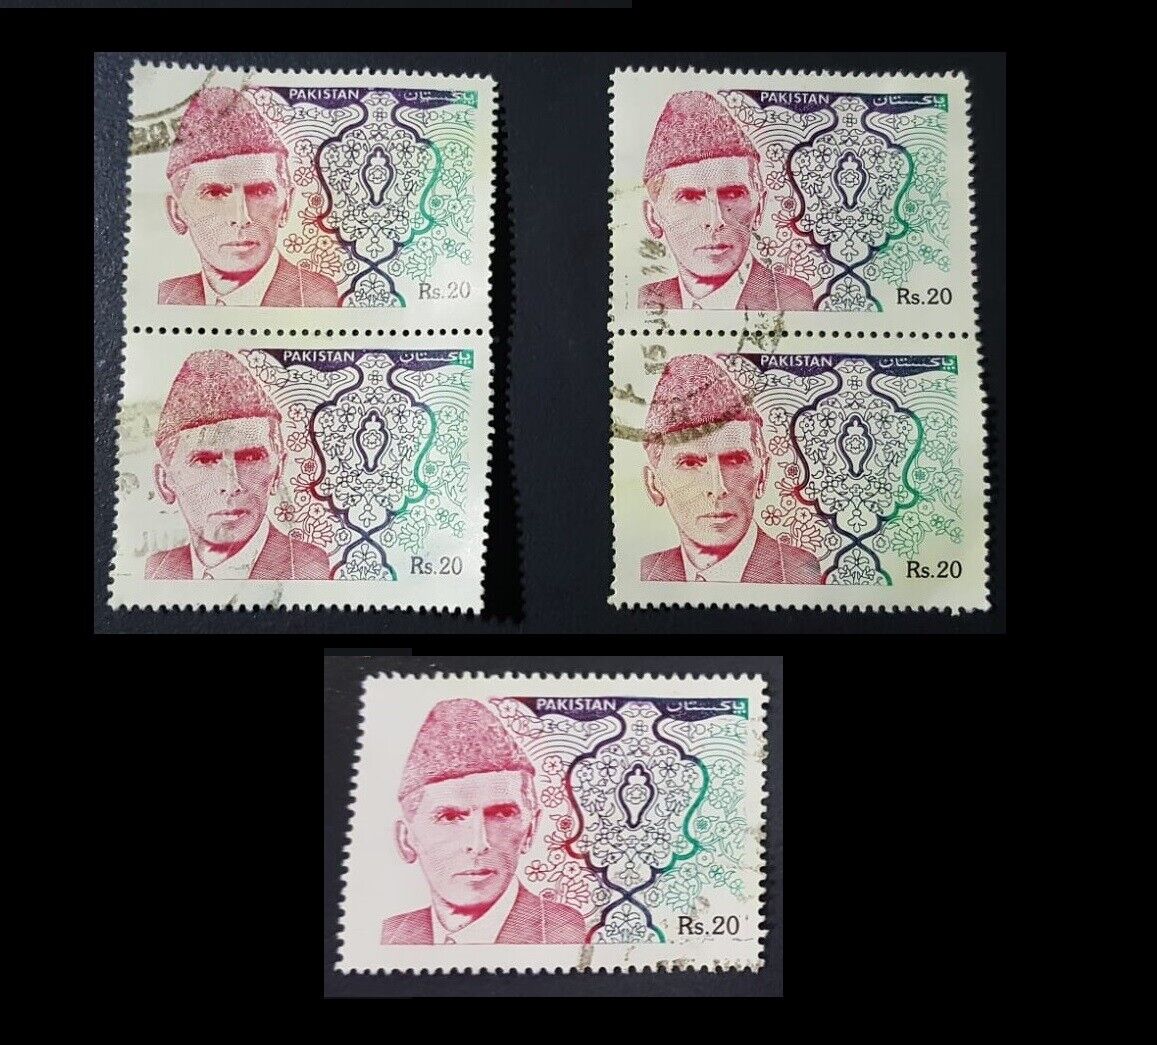 Jinnah PAKISTAN 2011 Stamp Rs. 20 Postage Used VF Без бренда